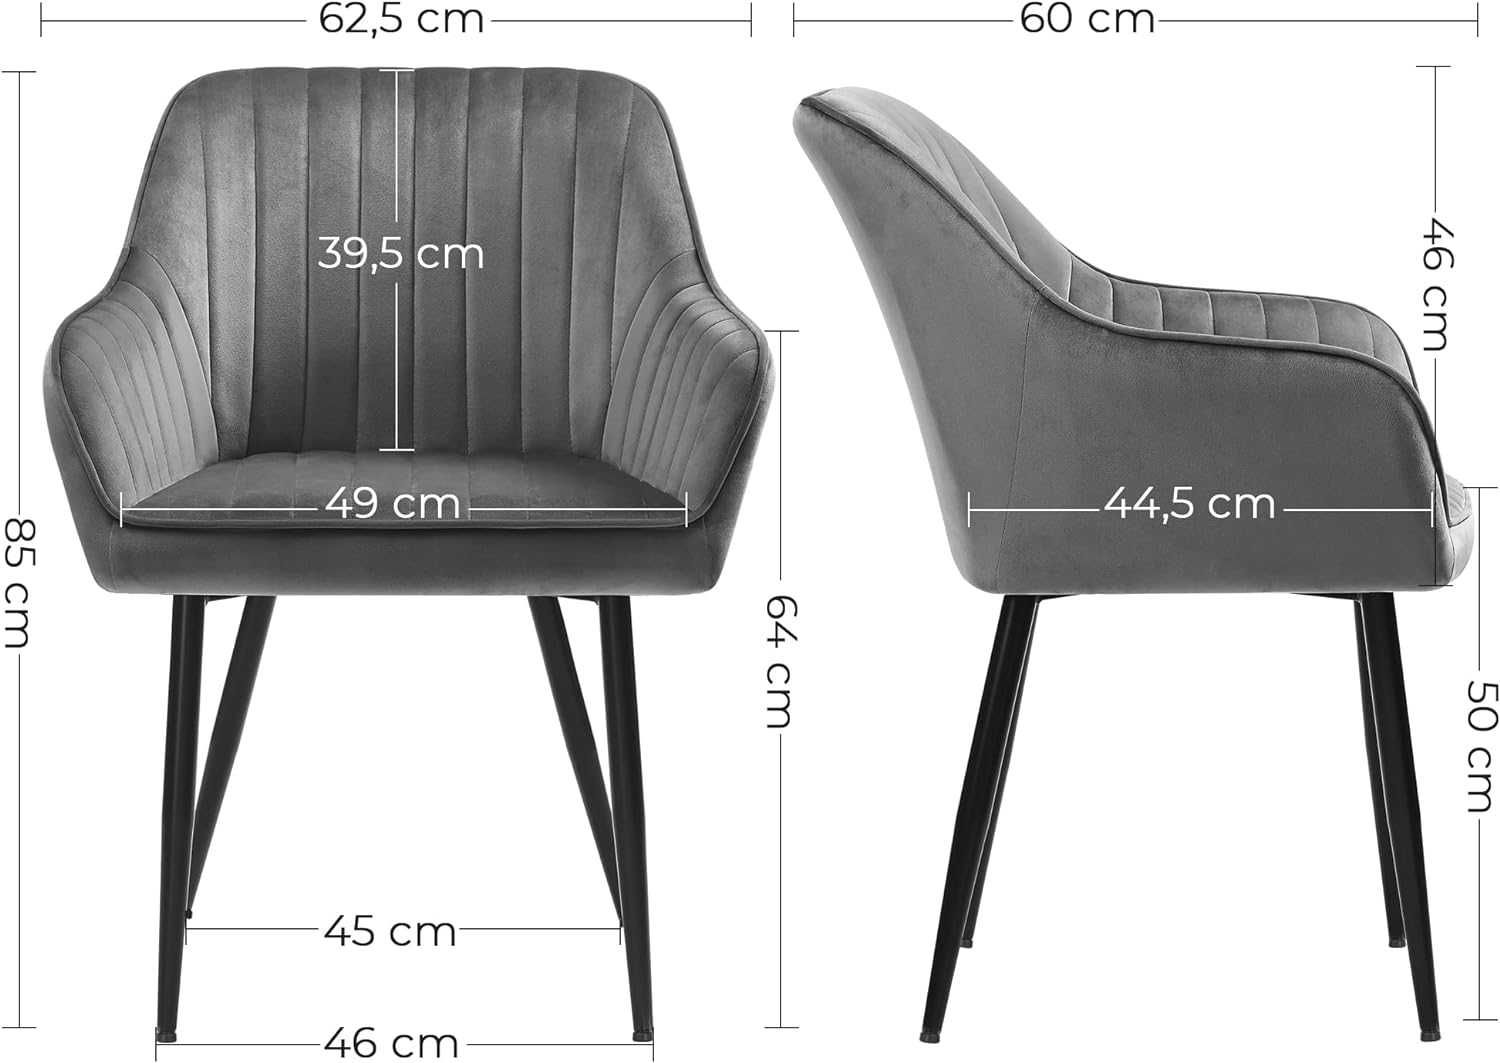 Nowe ergonomiczne tapicerowane krzesło / fotel / SONGMICS !5801!